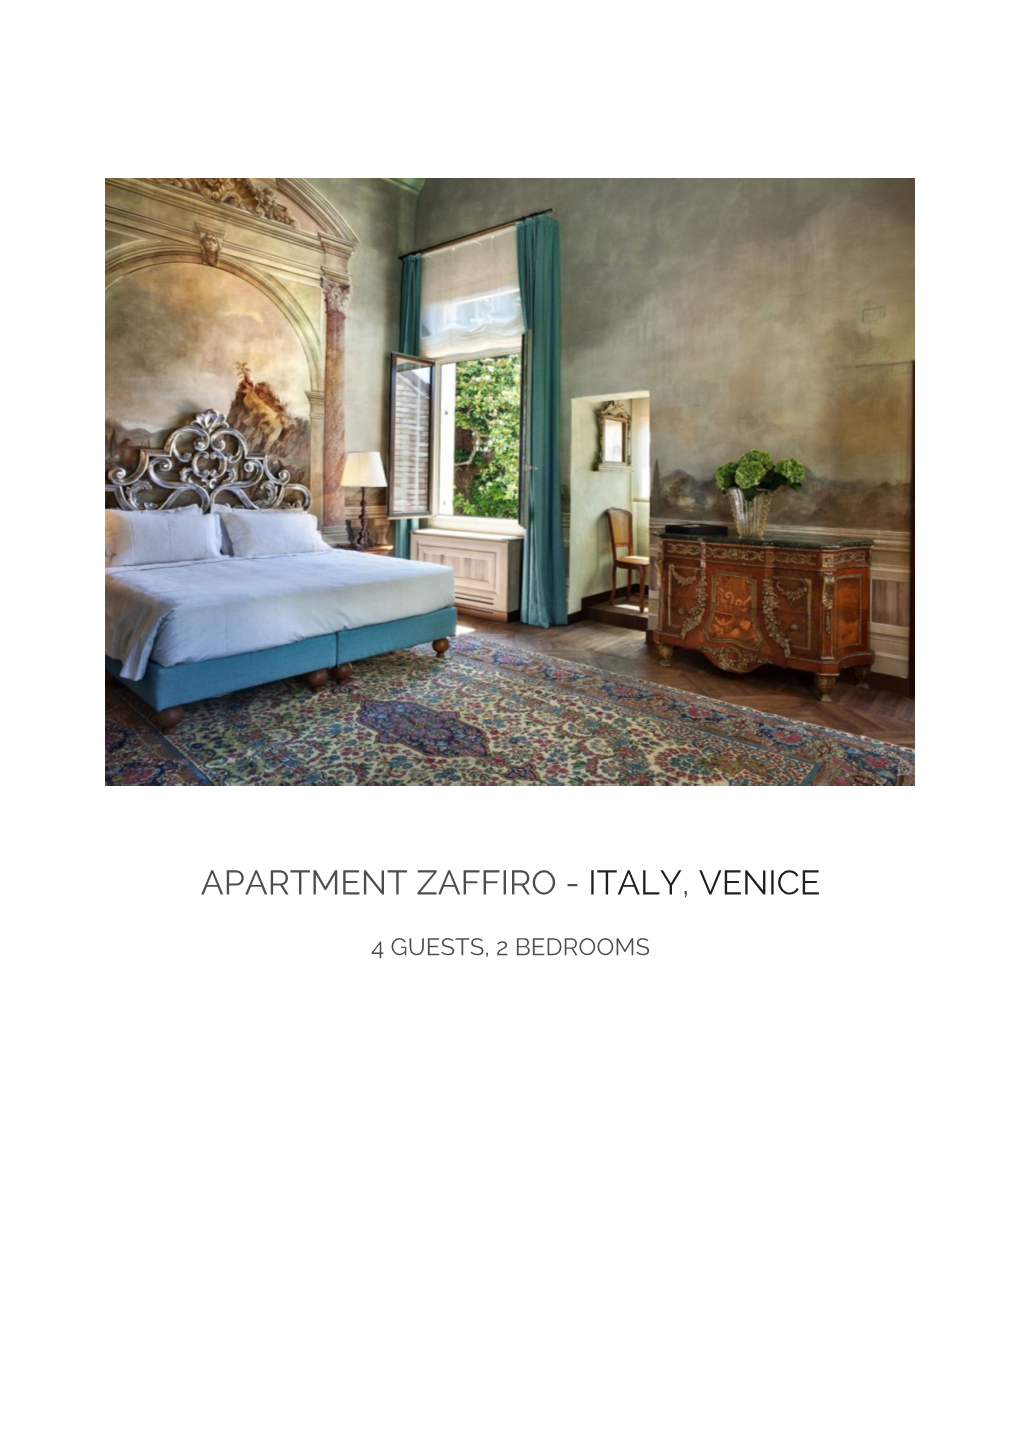 Apartment Zaffiro - Italy, Venice